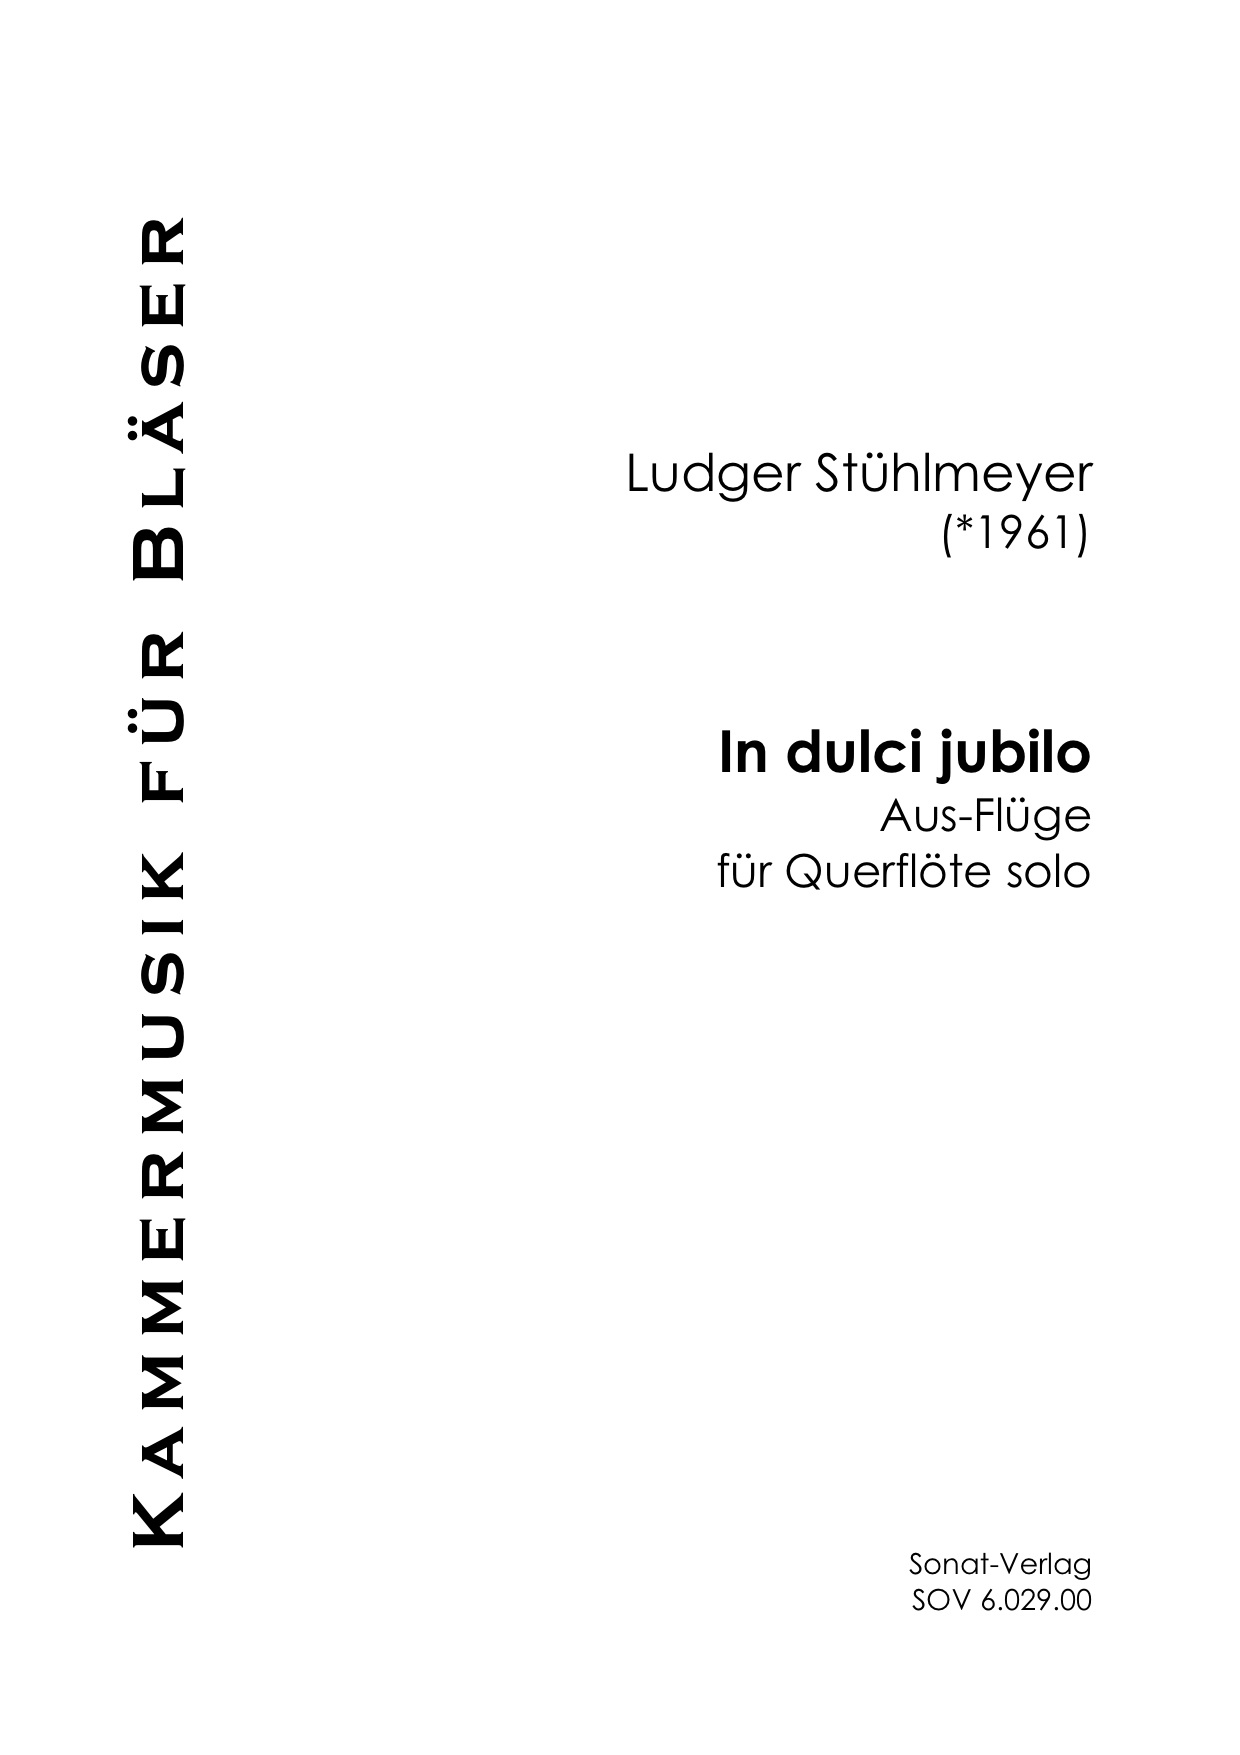 In dulci jubilo - Aus-Flüge für Querflöte solo